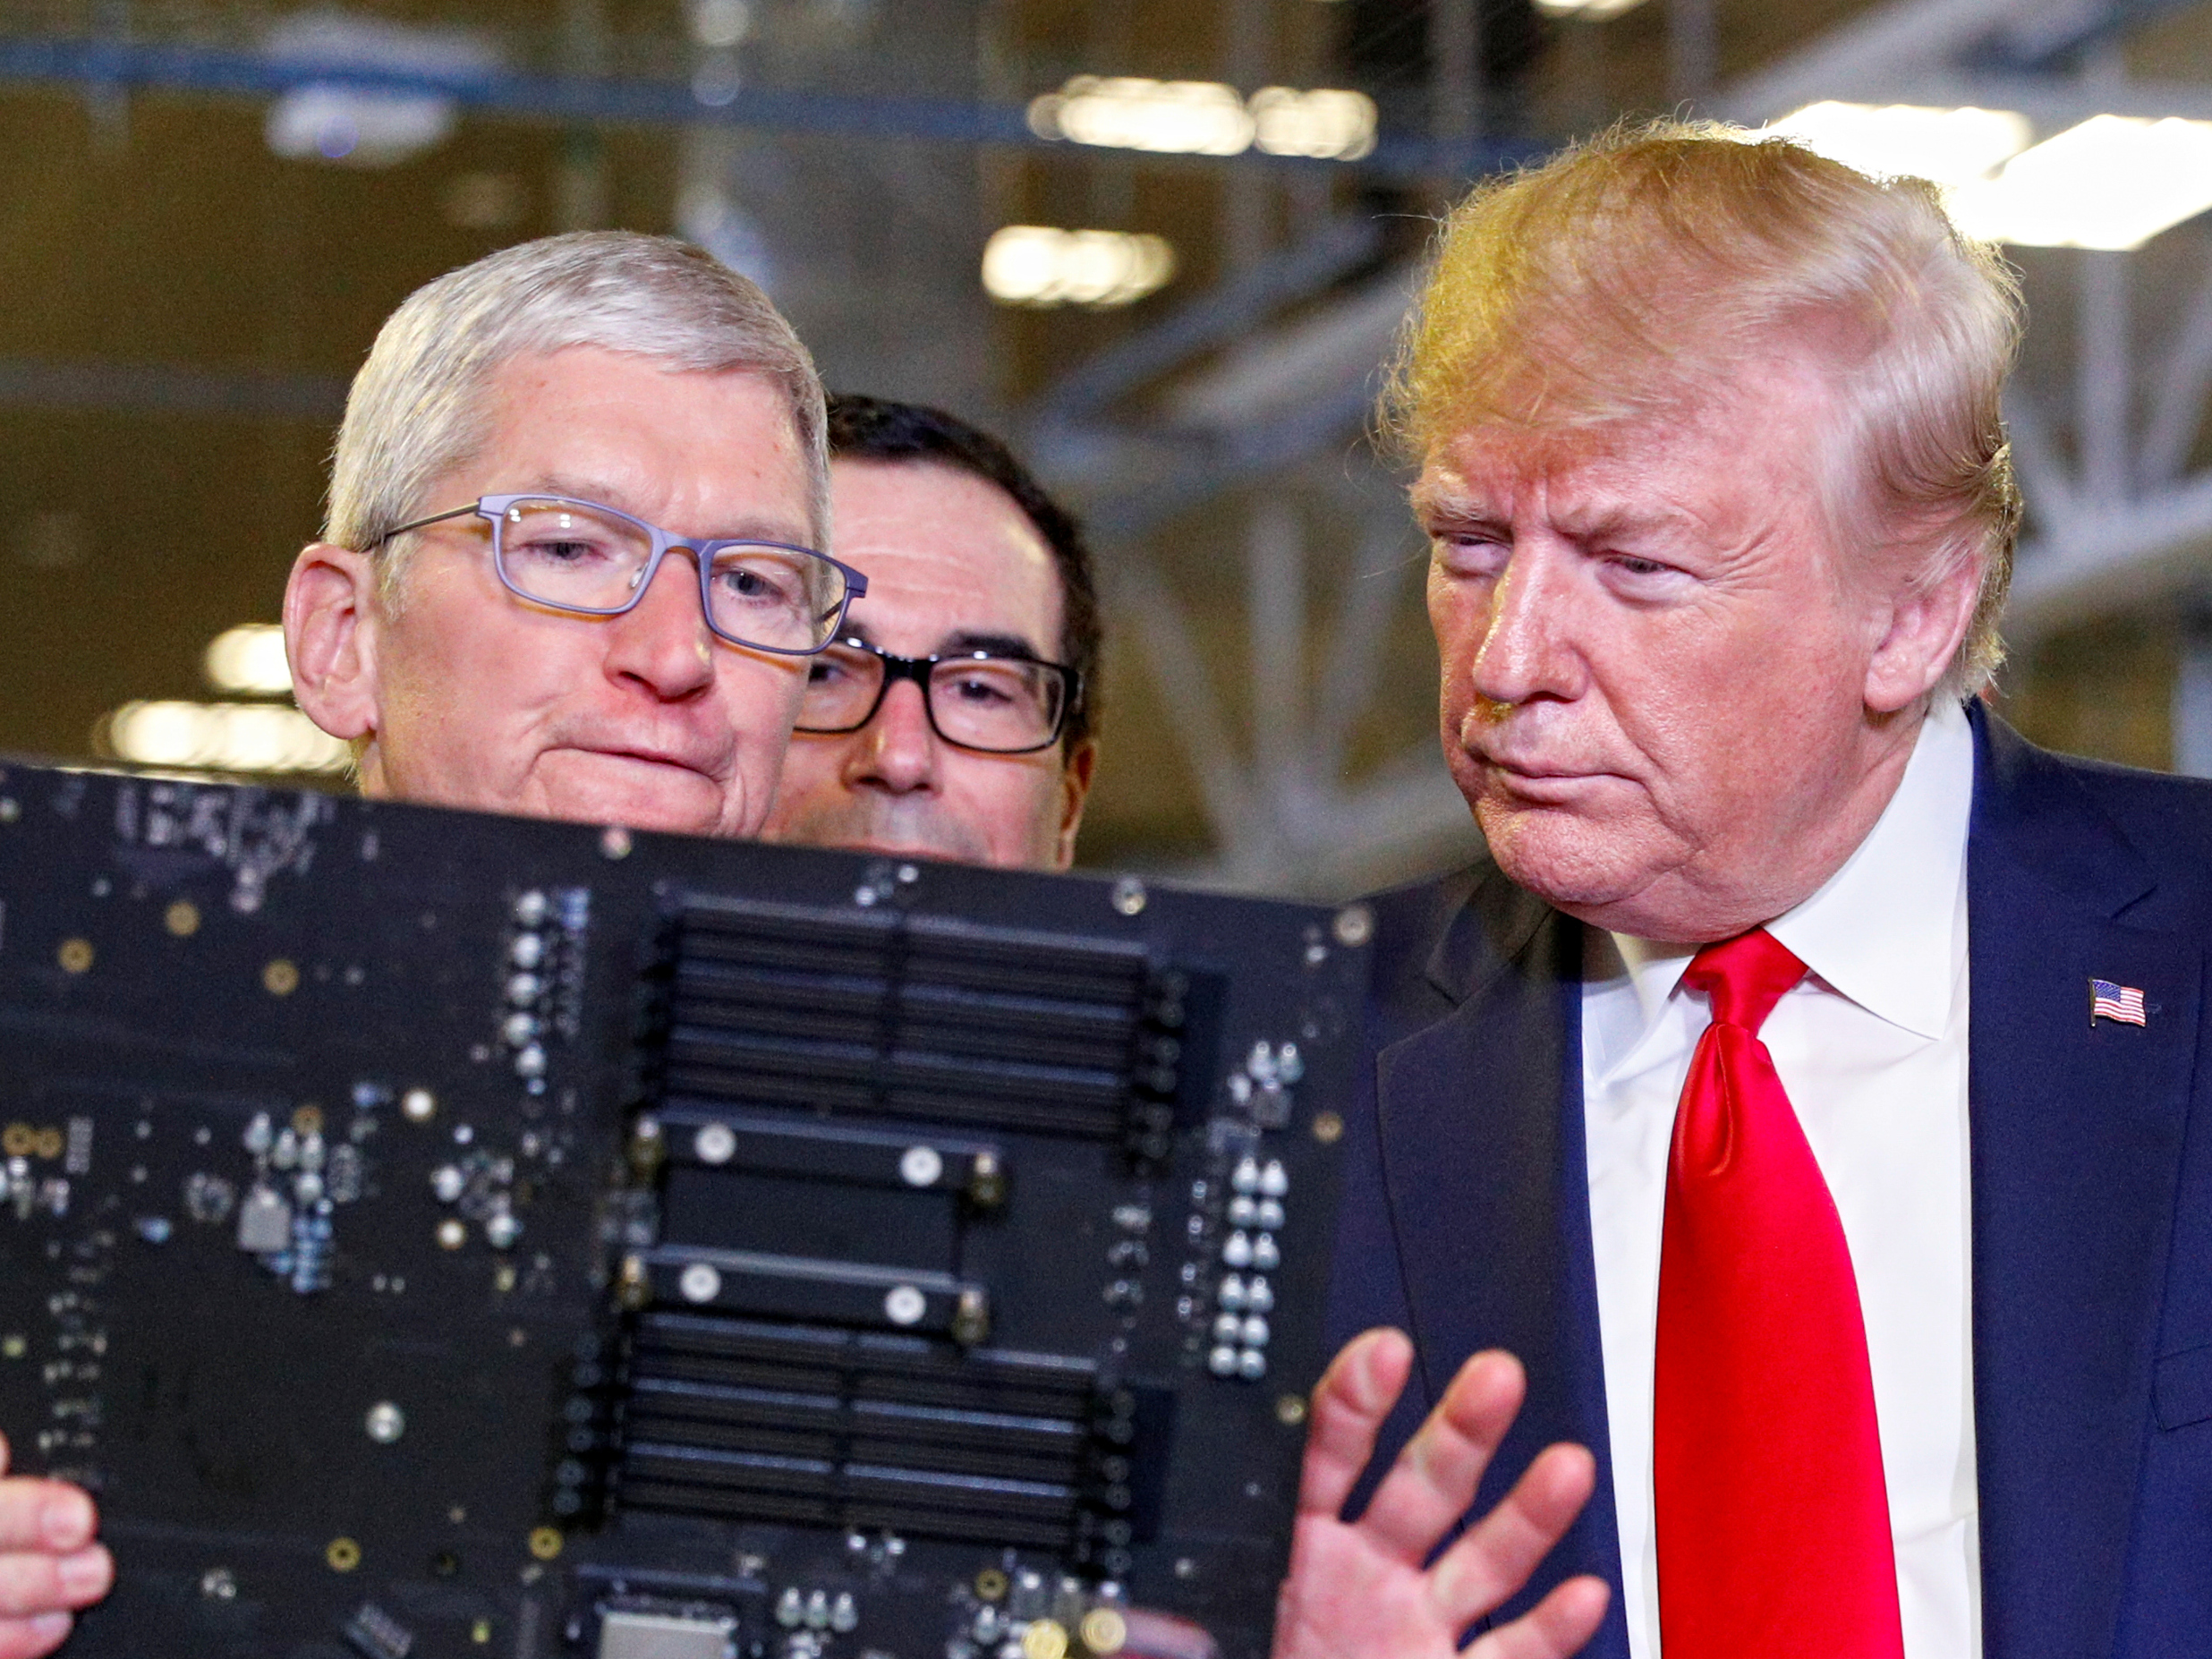 Apple-topman Tim Cook leidt president Donald Trump rond in de fabriek in Texas.